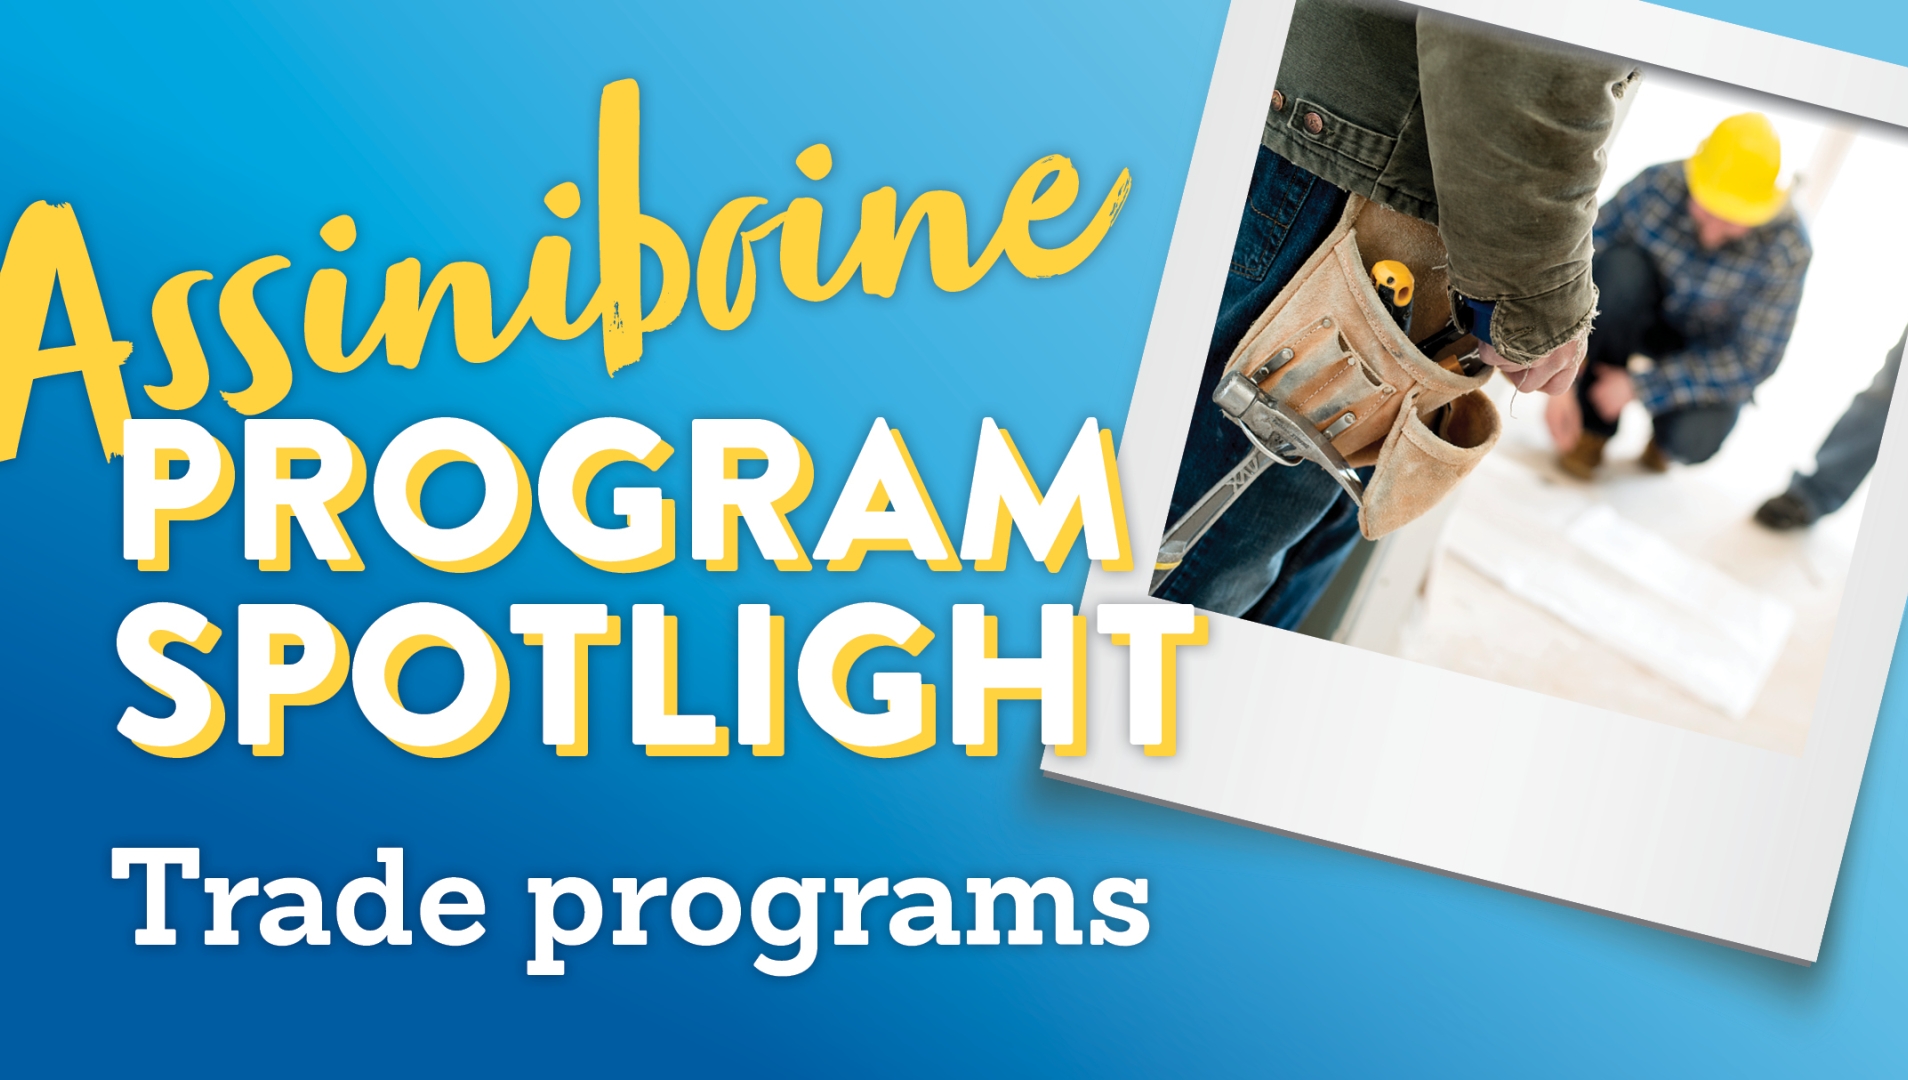 Program Spotlight: Trades at Assiniboine